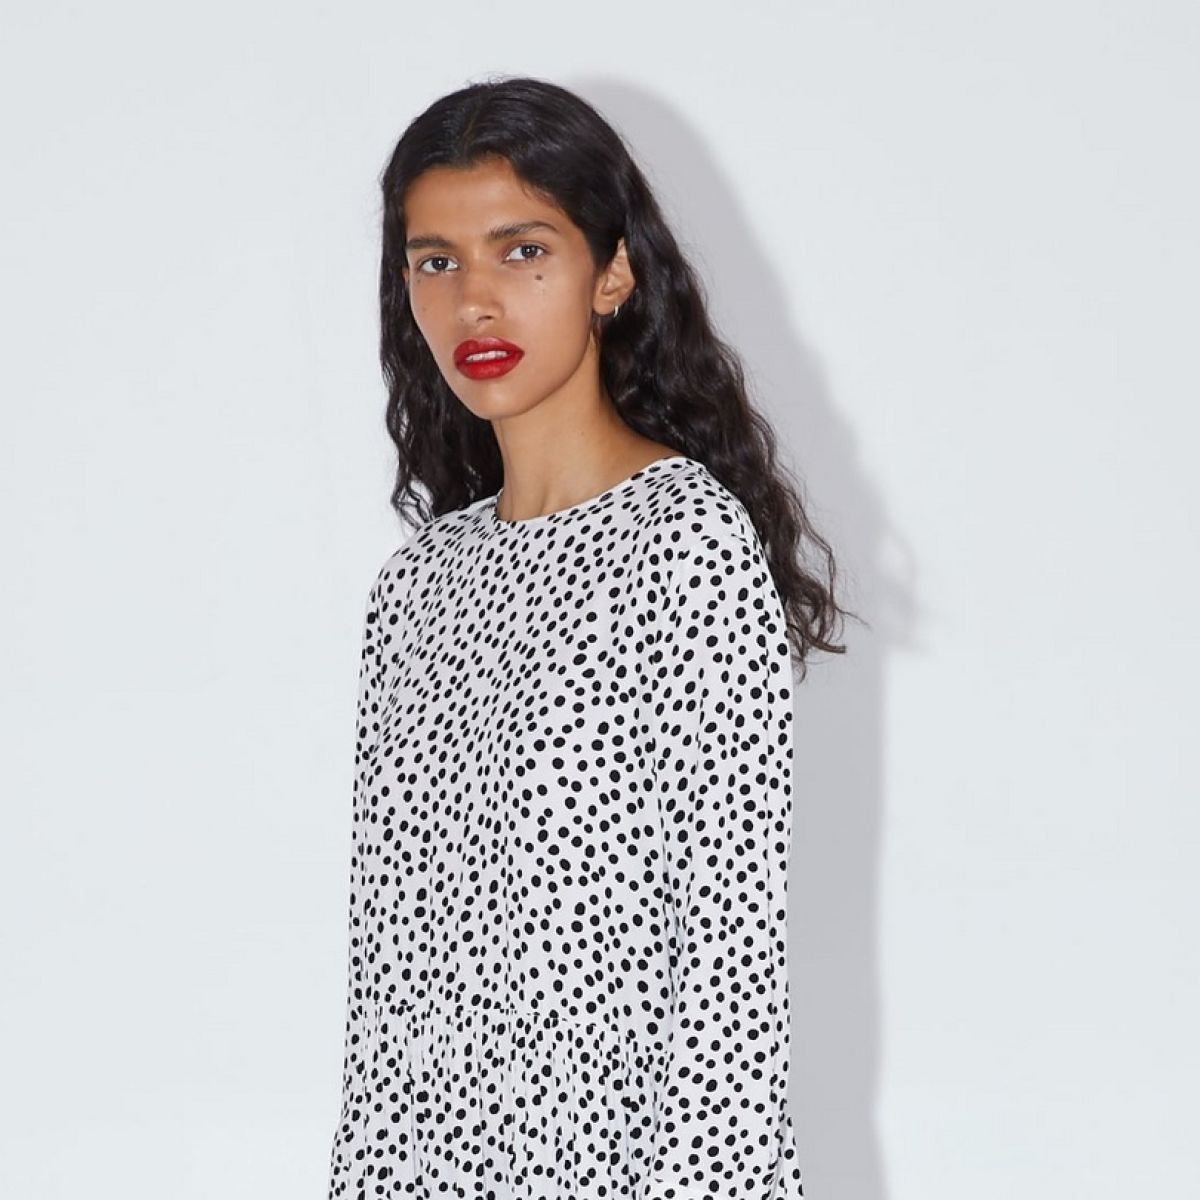 Polka-dot dress boosts Zara sales in 